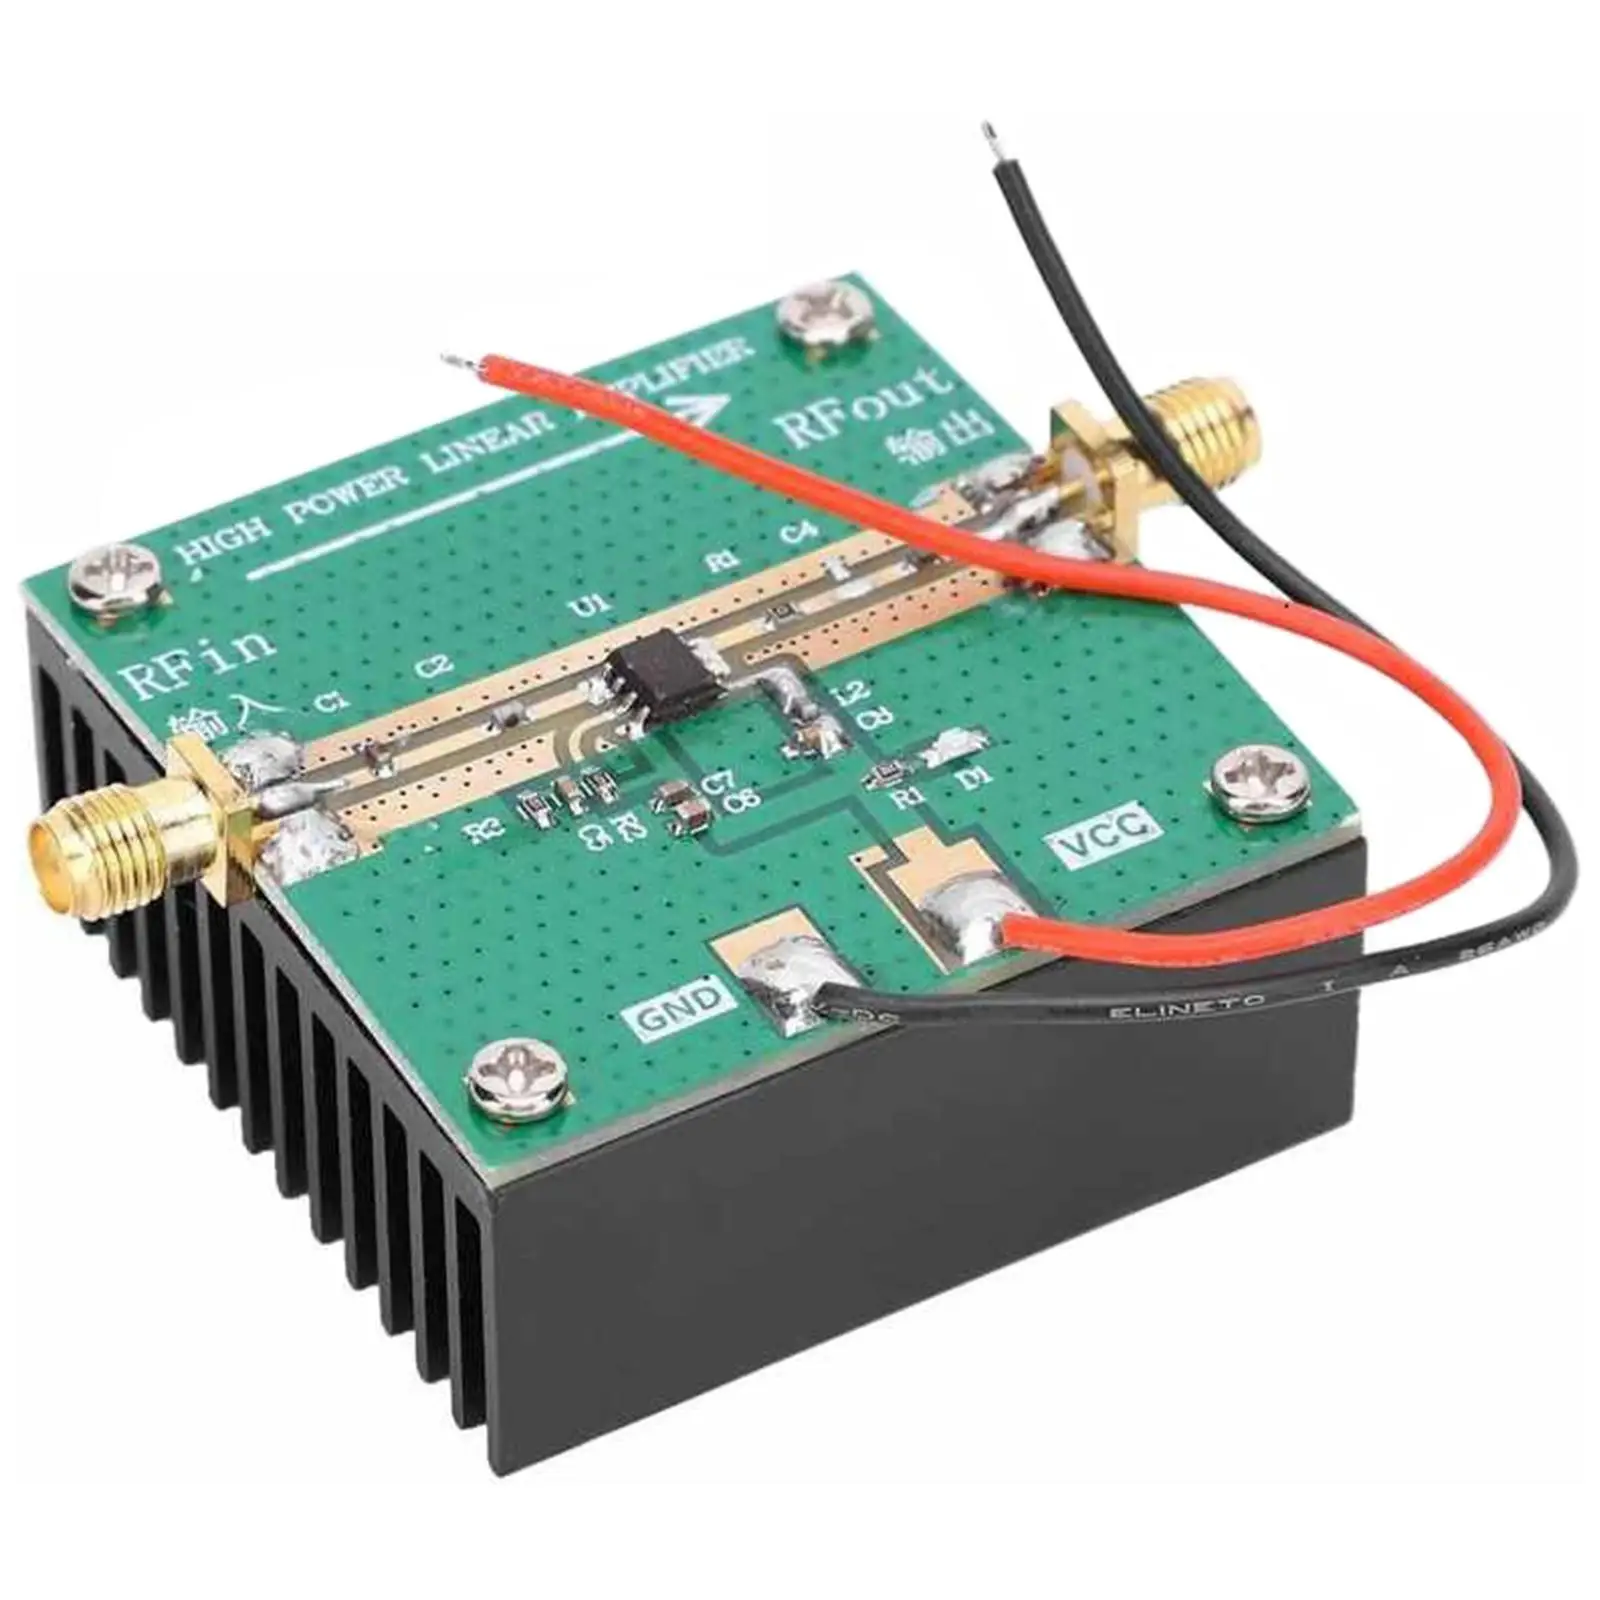 RF Power Amplifier with Heatsink, RF2126 2.4GHz 1W 400-2700MHz Amplification Module, RF Logarithmic Detector for FM Ham Radio